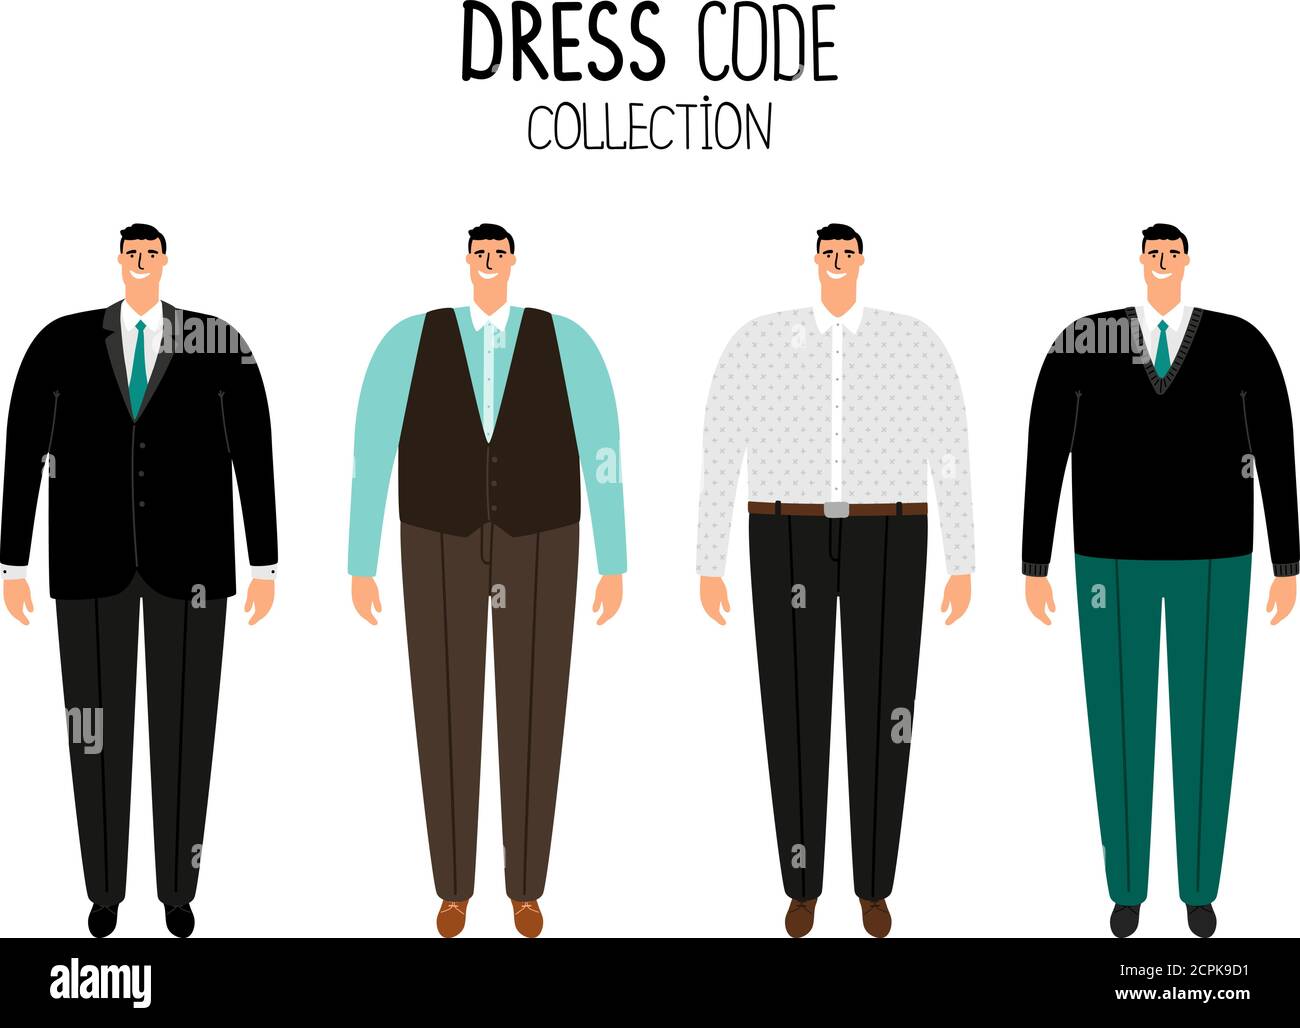 Männer formelle Kleid Code Vektor Illustration. Business Männer Symbole isoliert auf weißem Hintergrund gesetzt Stock Vektor